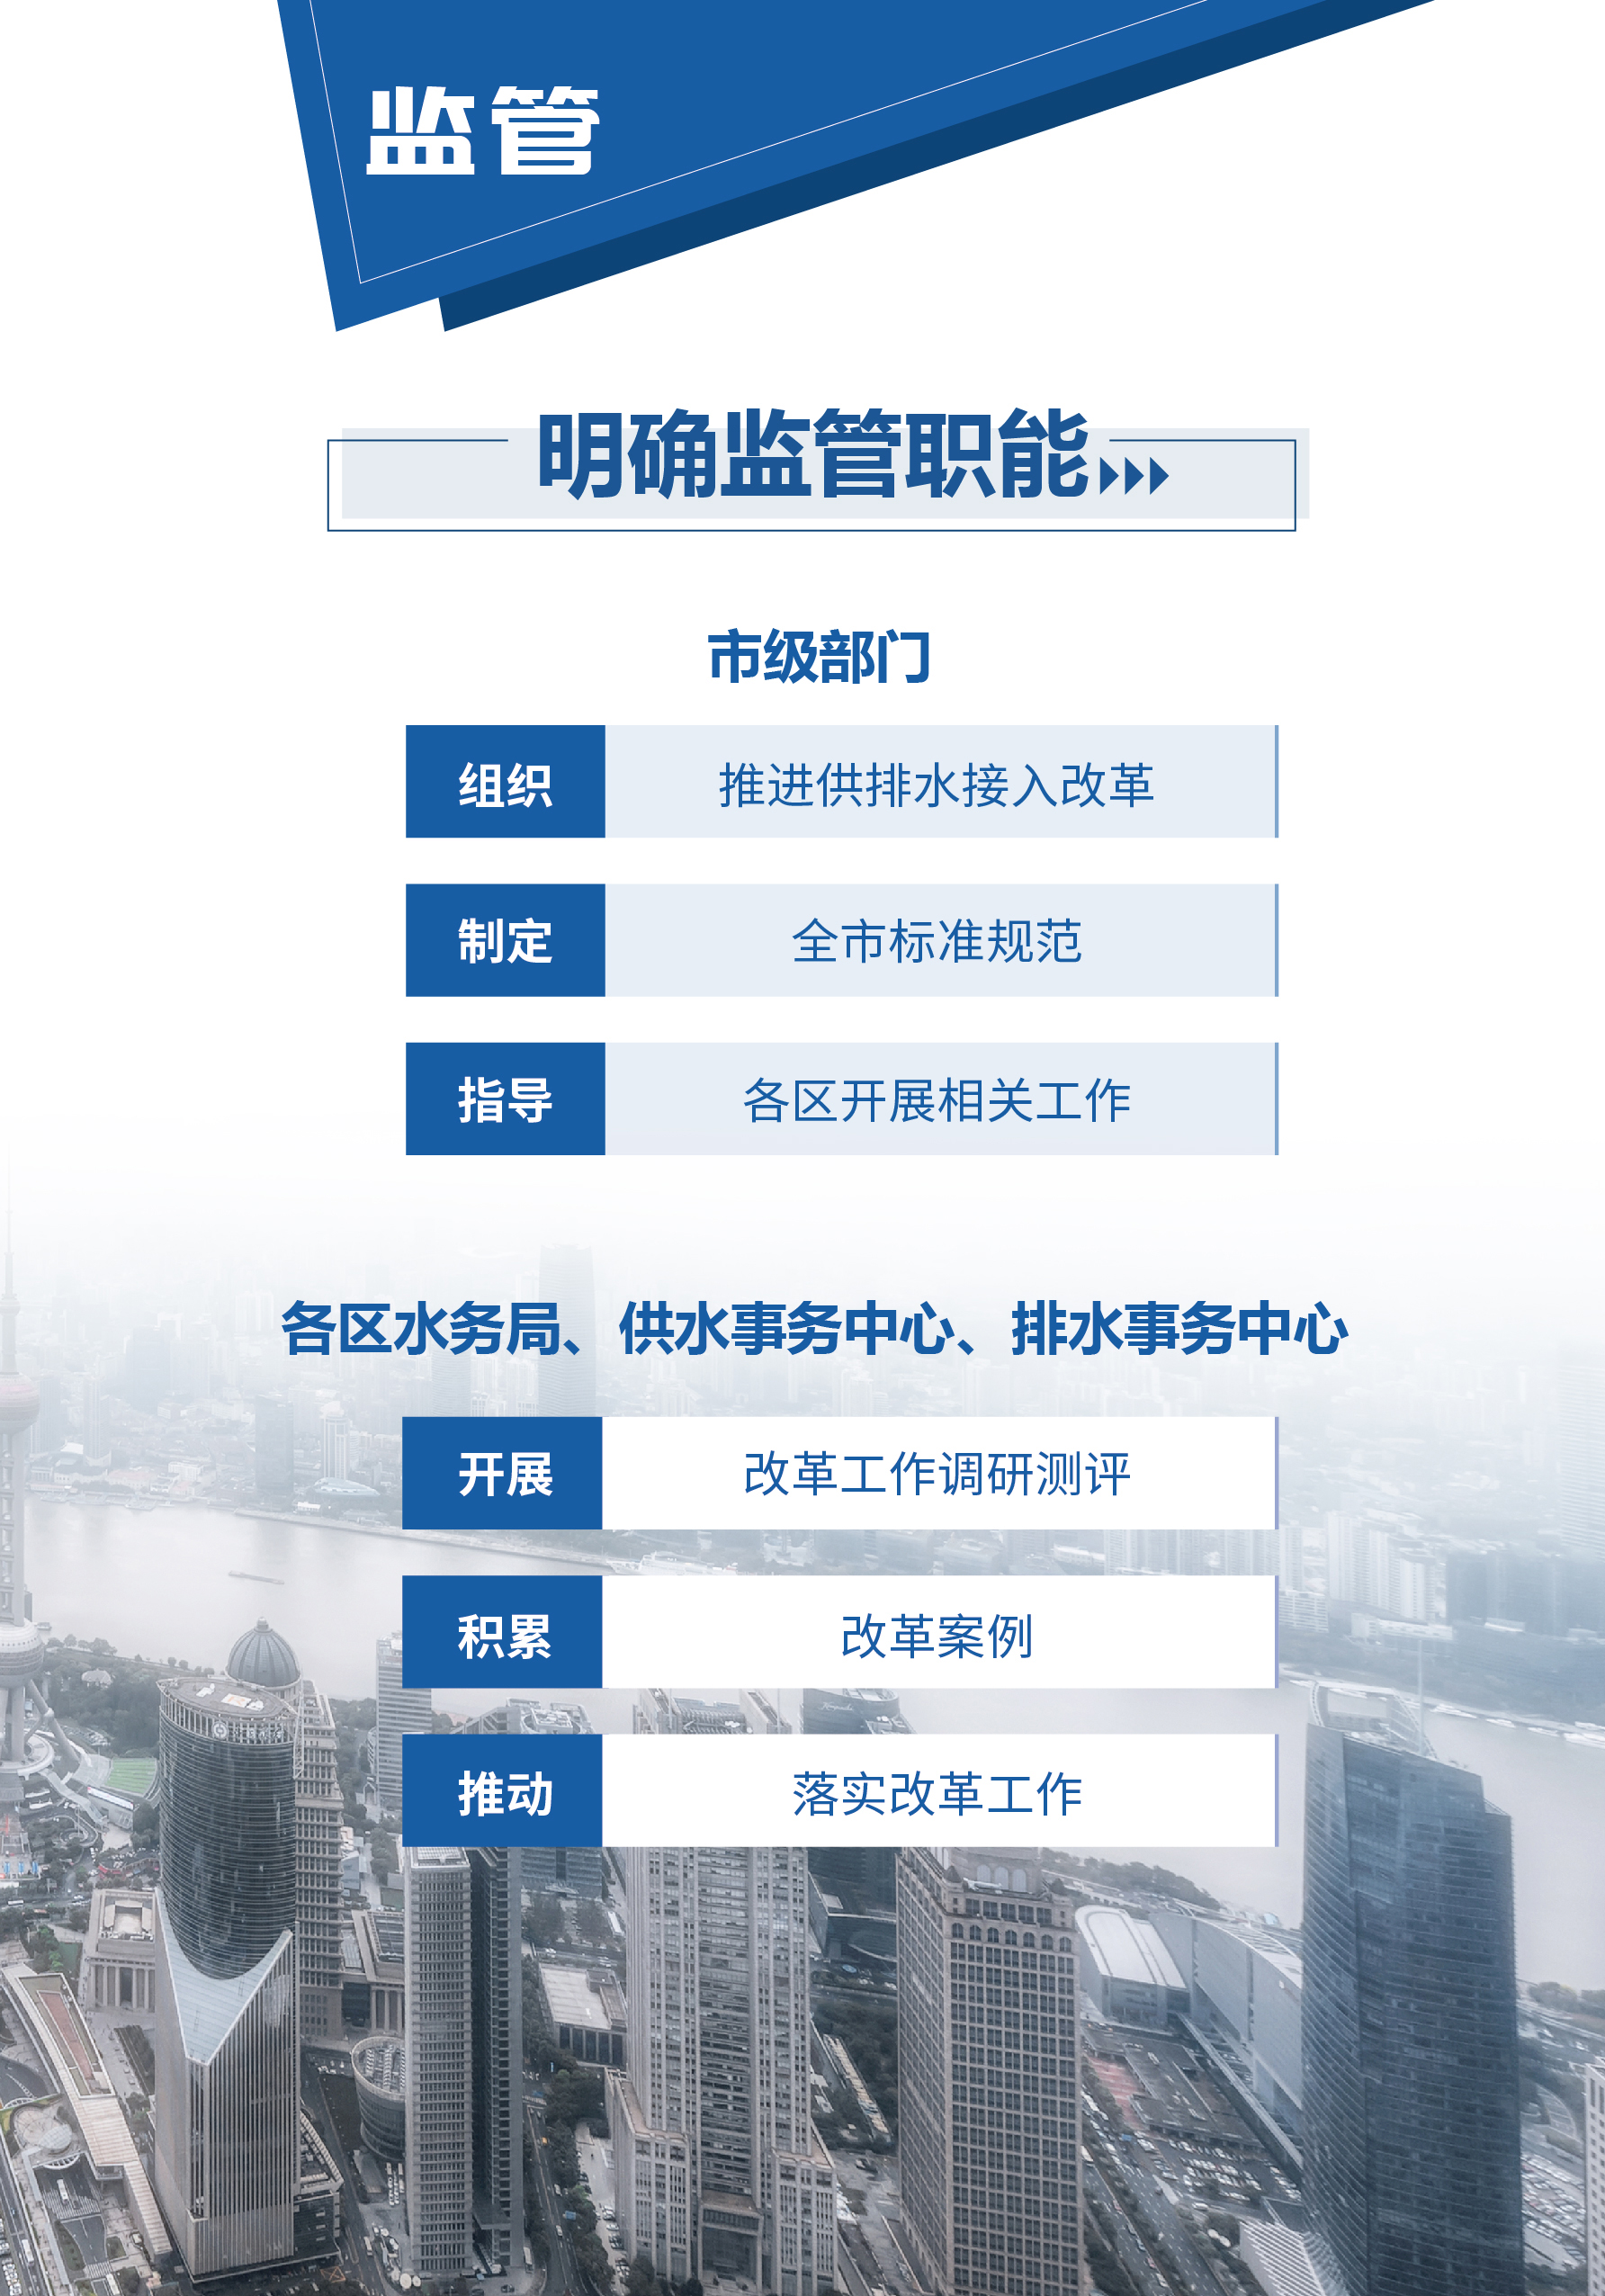 0515-上海供排水接入改革6.0版_页面_03.jpg